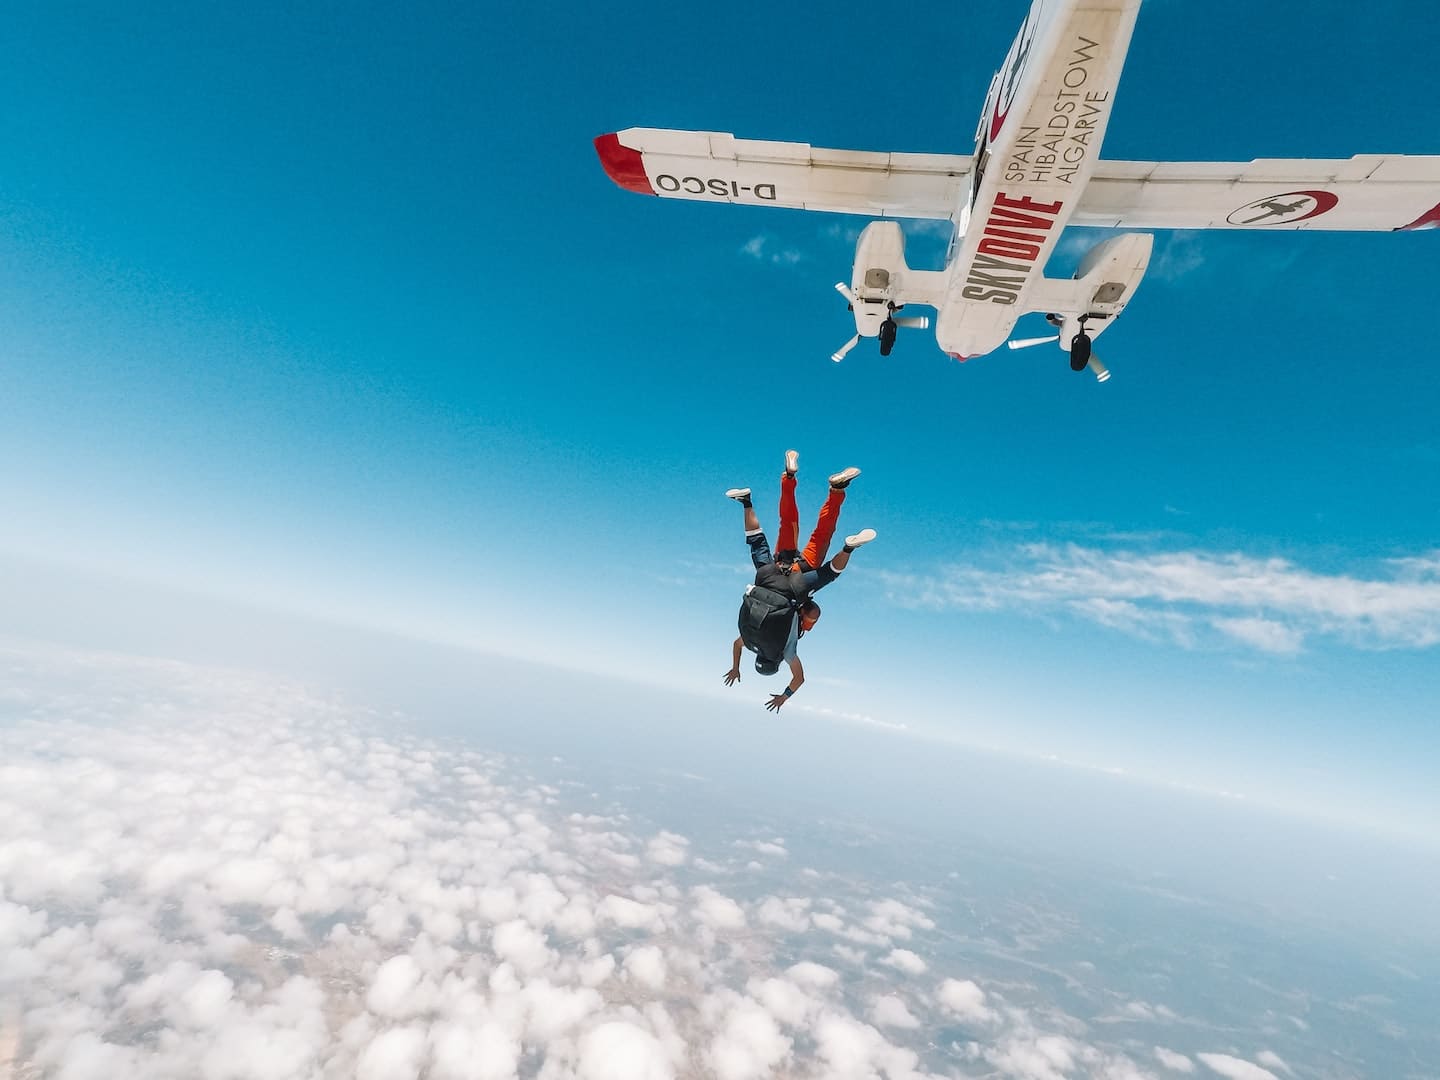 Sauter en parachute requiert un avion de tourisme